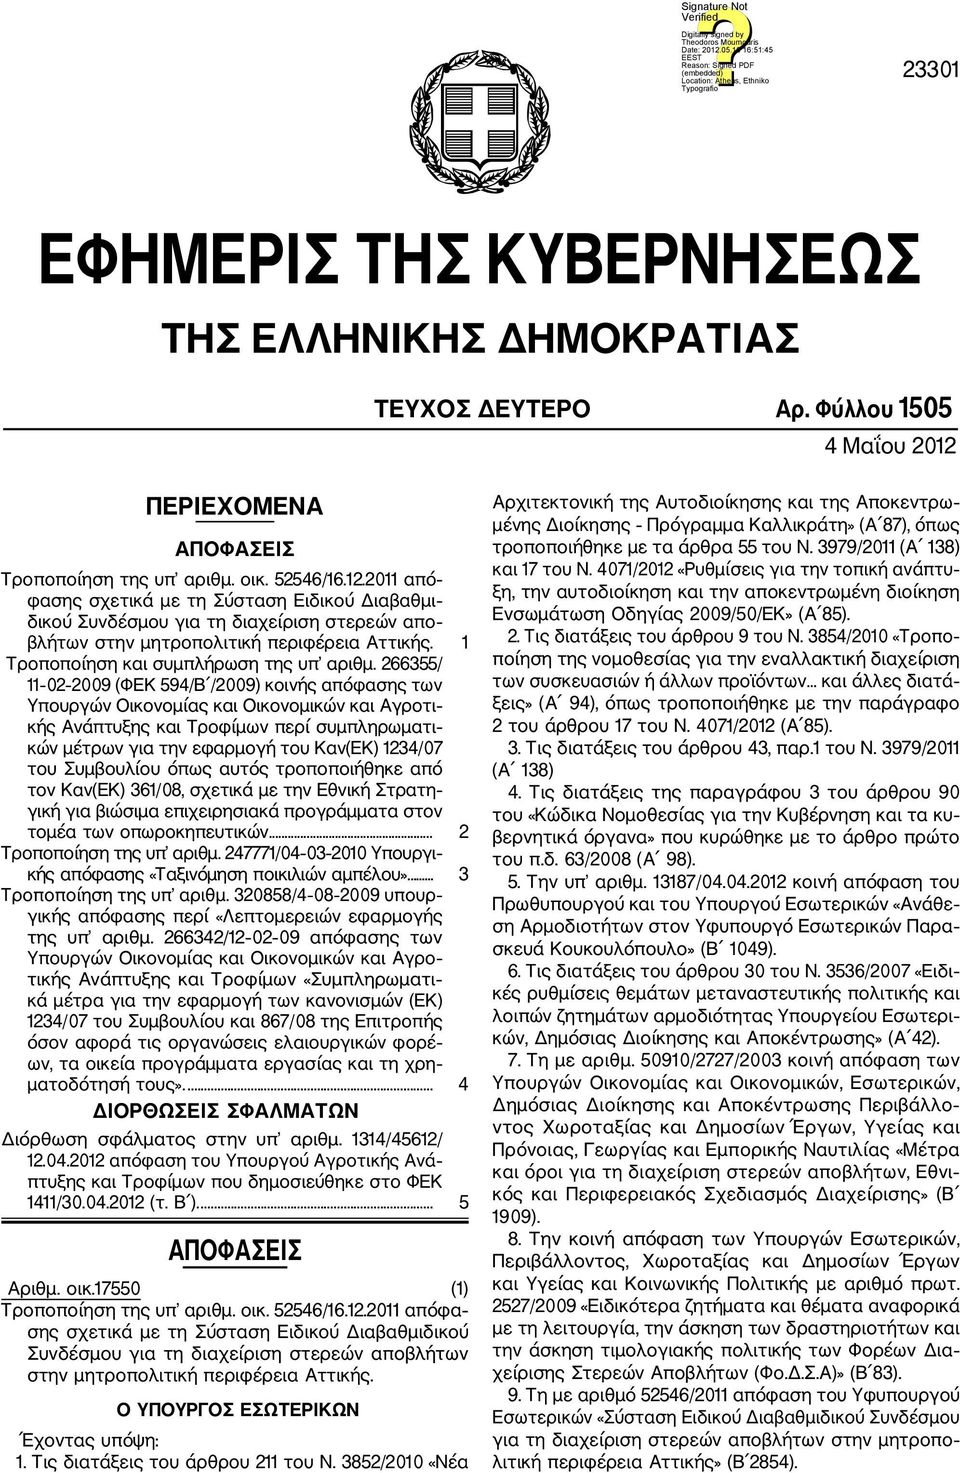 2011 από φασης σχετικά με τη Σύσταση Ειδικού Διαβαθμι δικού Συνδέσμου για τη διαχείριση στερεών απο βλήτων στην μητροπολιτική περιφέρεια Αττικής. 1 Τροποποίηση και συμπλήρωση της υπ αριθμ.